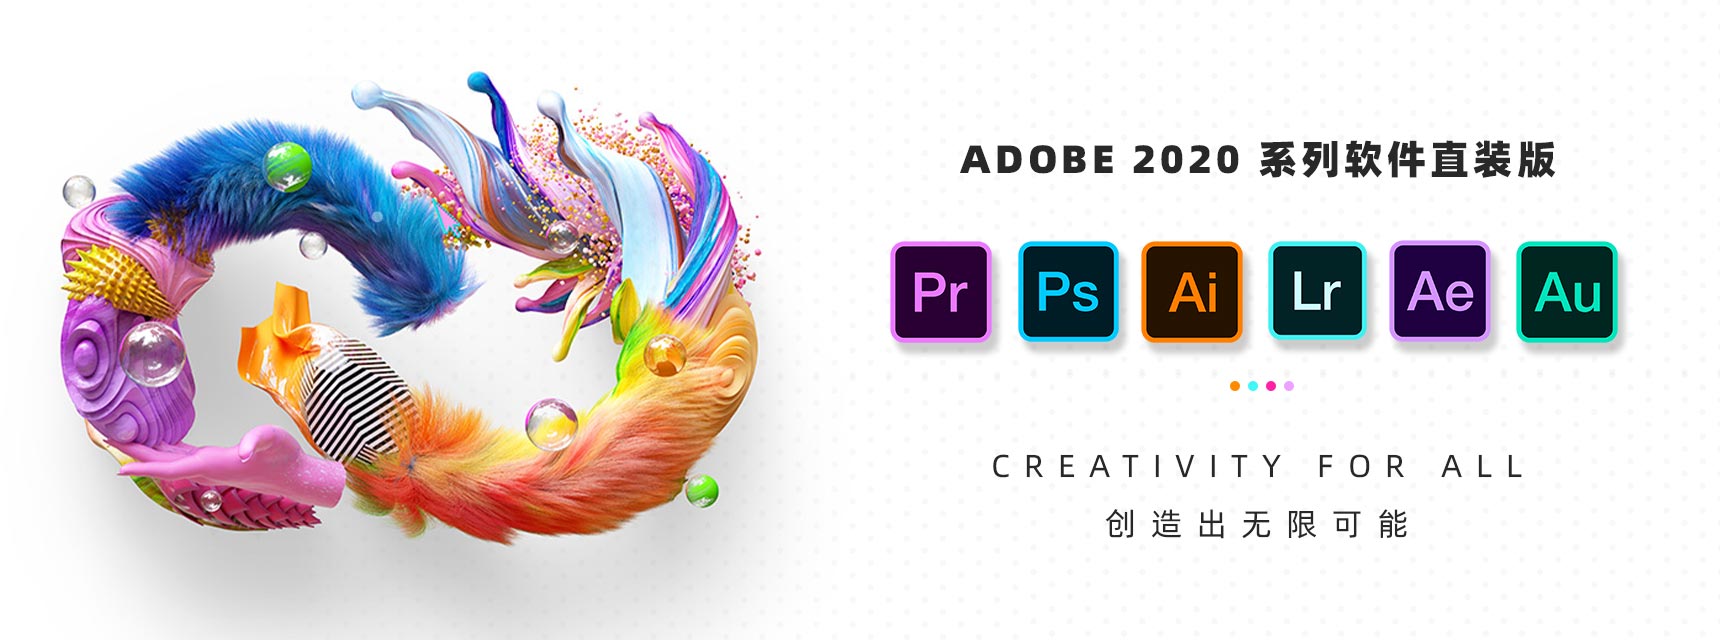 Adobe 创意应用软件 2020 合集